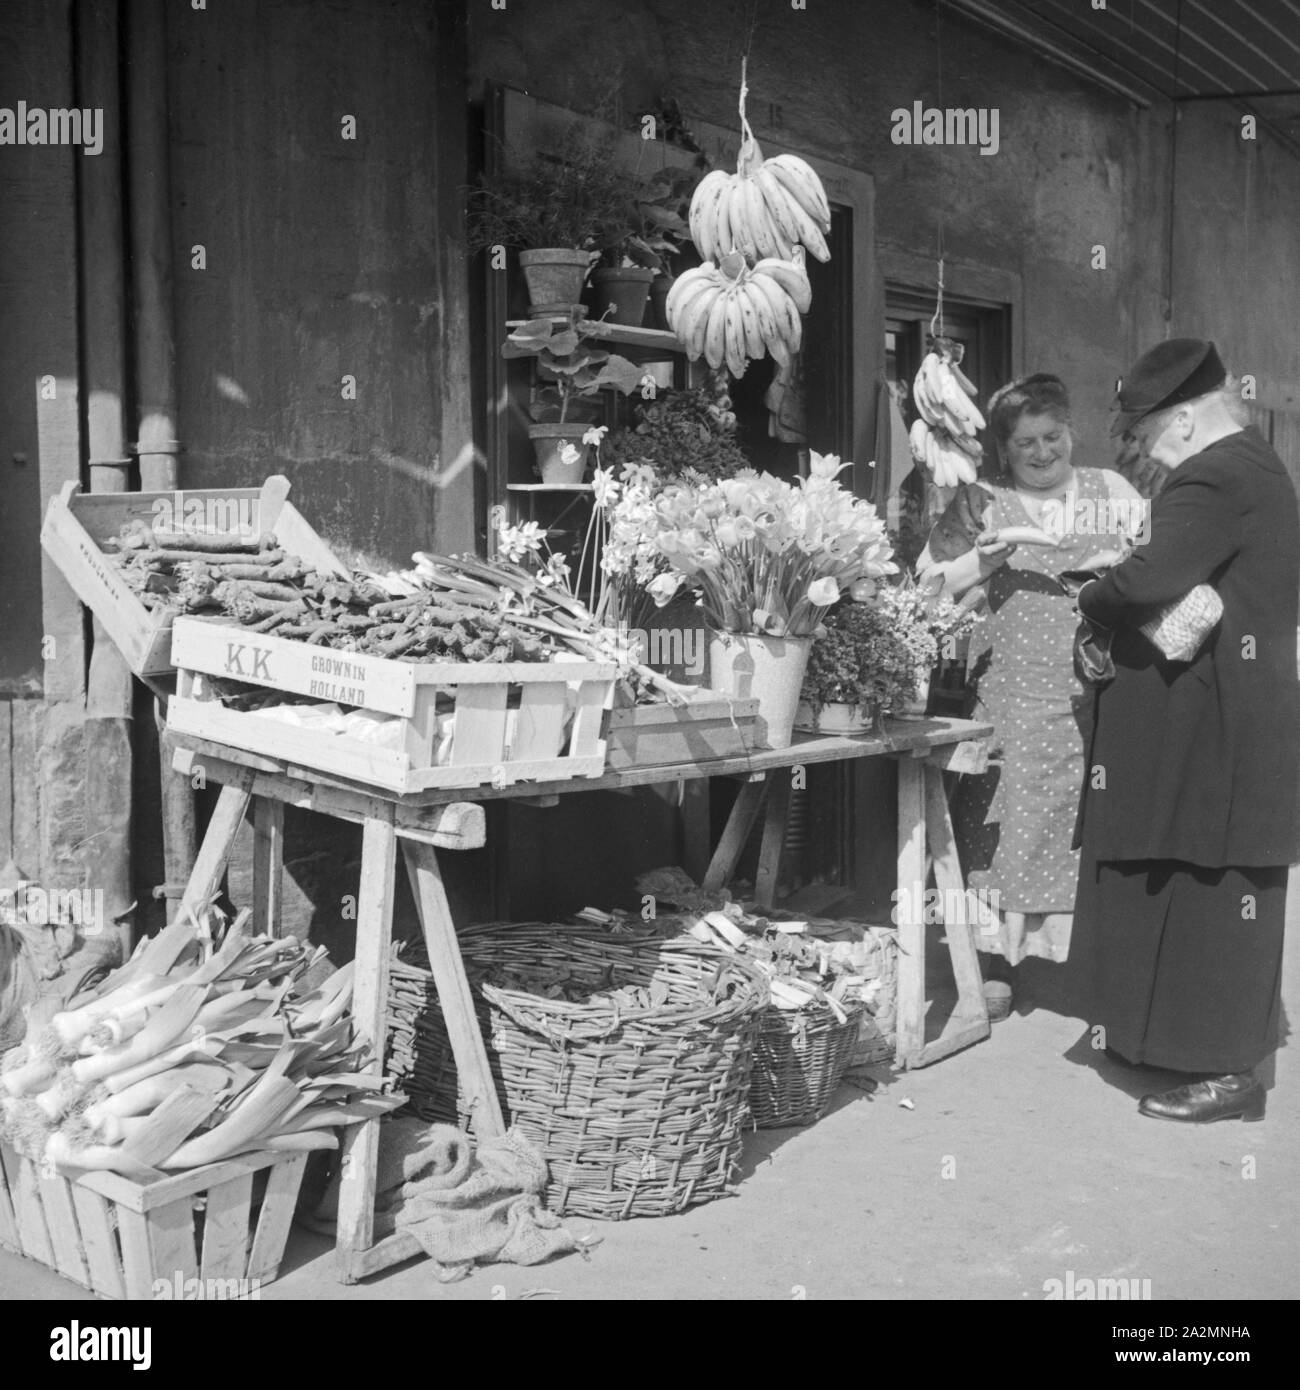 Zwei Frauen auf dem Markt, Deutschland 1930er Jahre.Two women at the market, Germany 1930s. Stock Photo